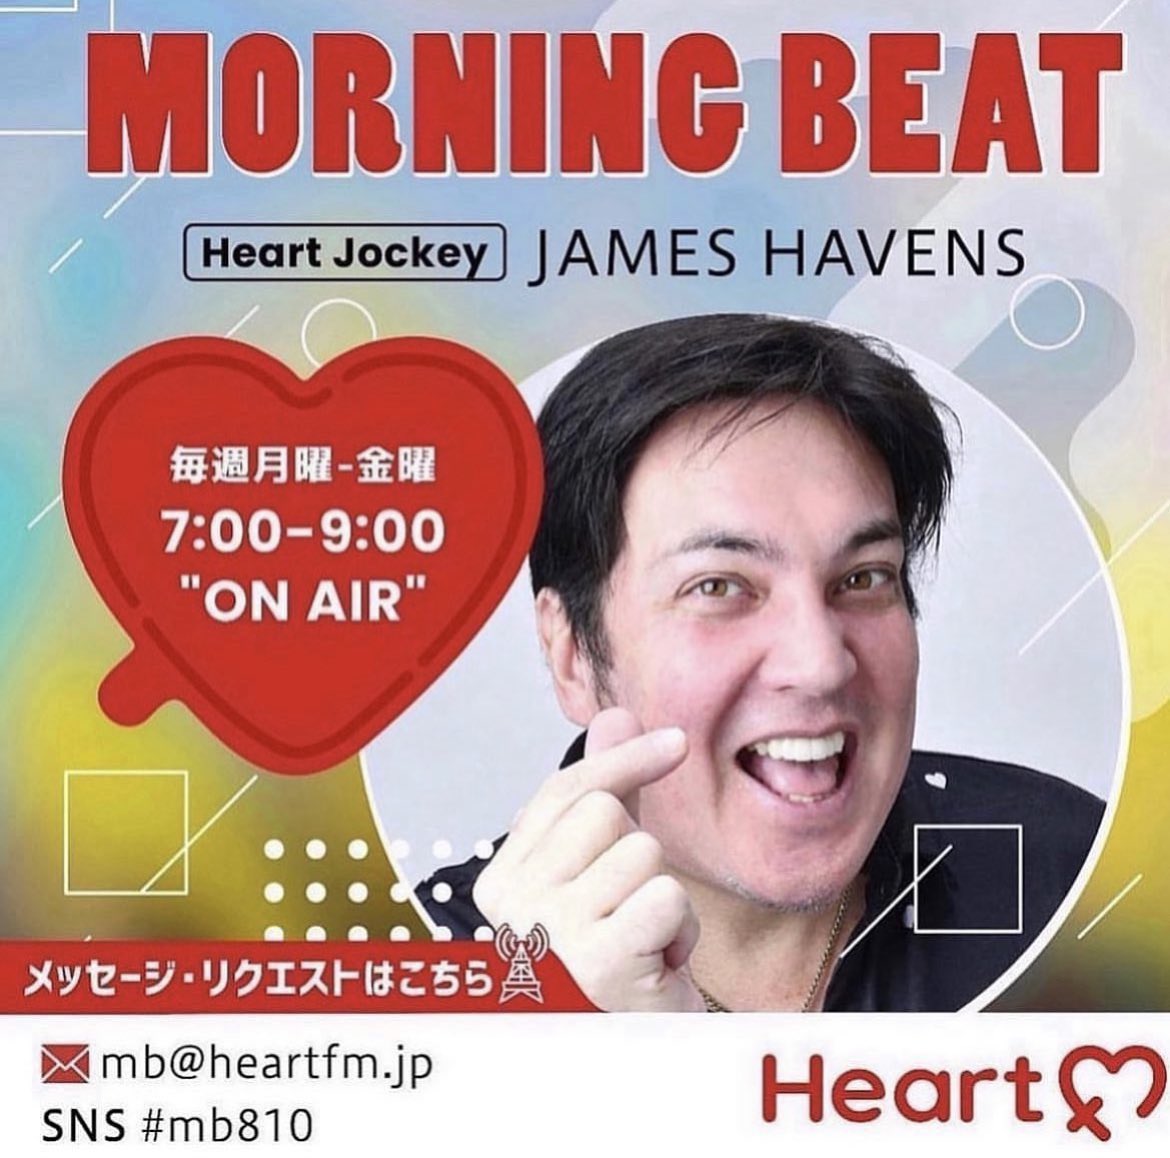 AM7:00-9:00'ON AIR' 「MORNING BEAT」 HJ : ジェイムス・ヘイブンス 今週もよろしくお願いします！ 生リク&ノー元気お待ちしております💓 メッセージはこちらから💁‍♂️ E-mail : mb@heartfm.jp SNS : #mb810 #heartfm810 HP : heartfm.jp/present/